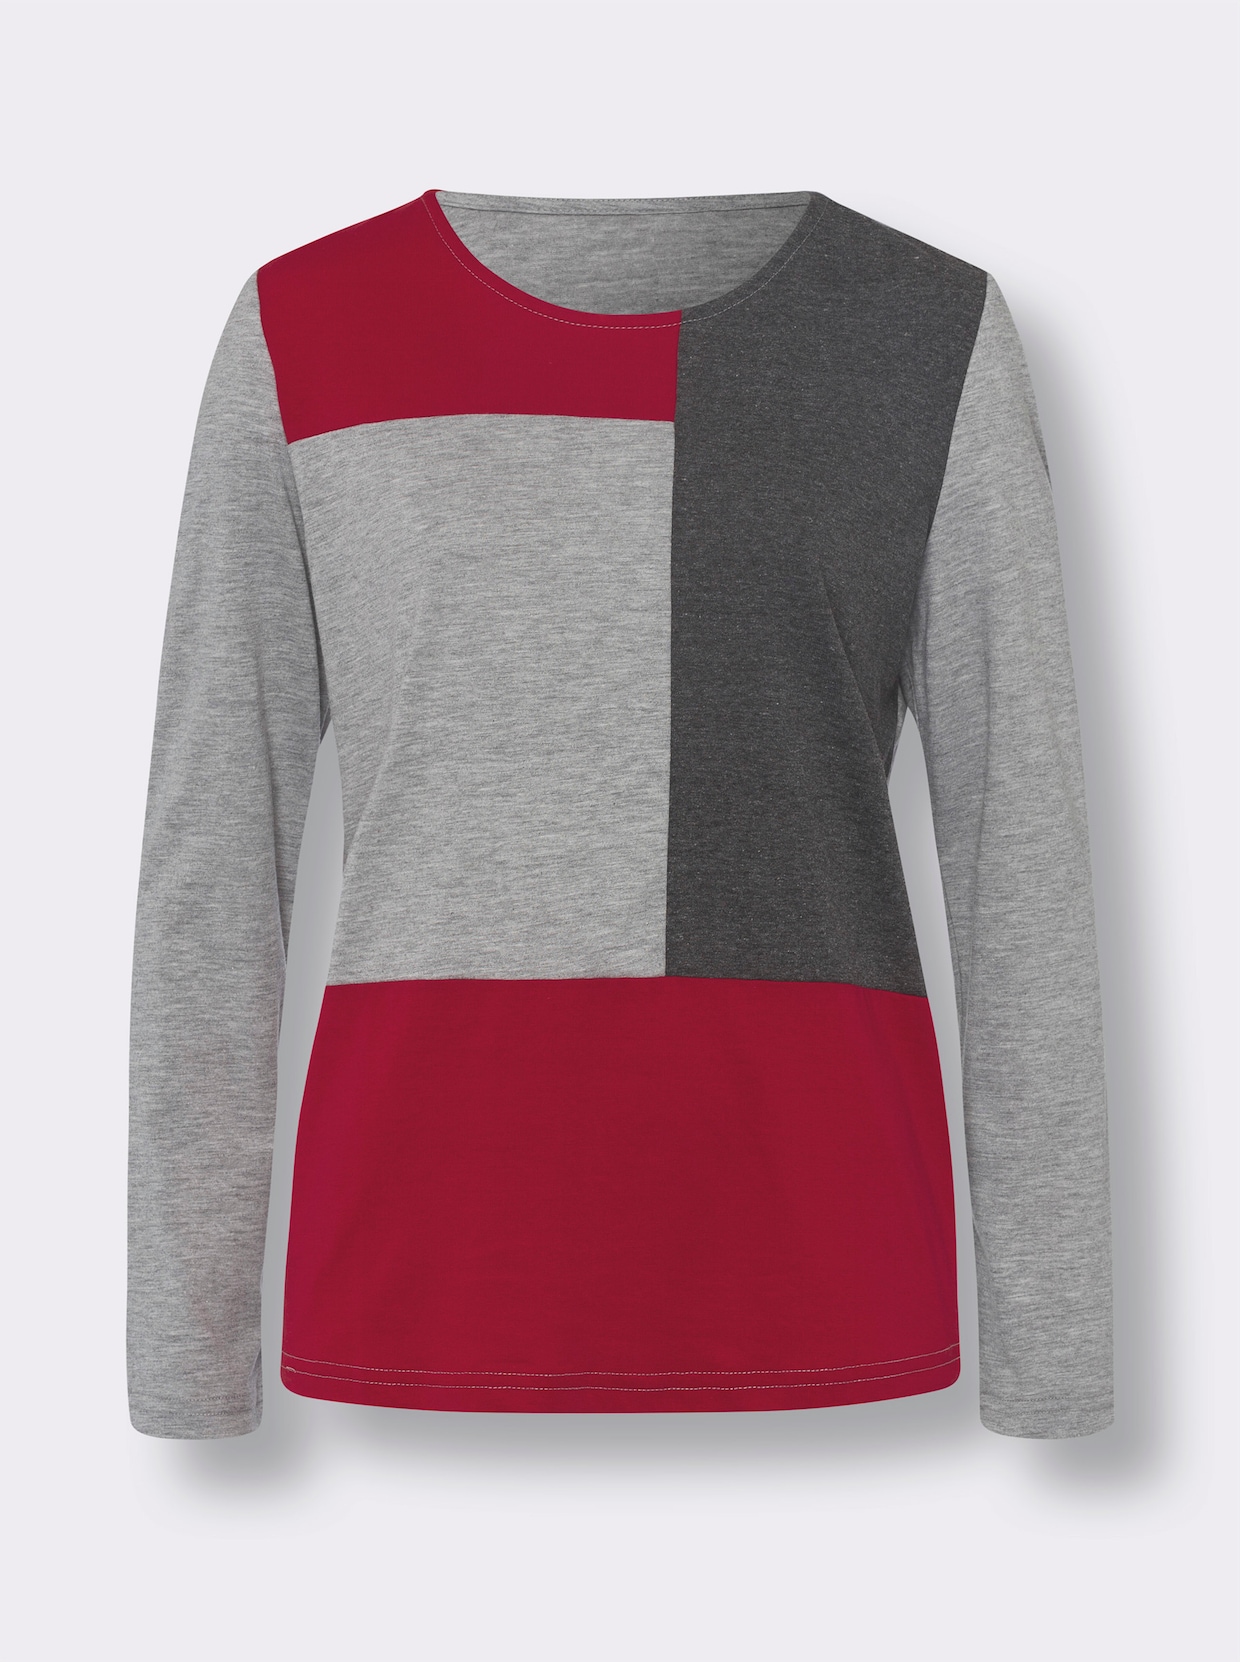 Tričko s dlouhým rukávem - červená-šedá-vzor